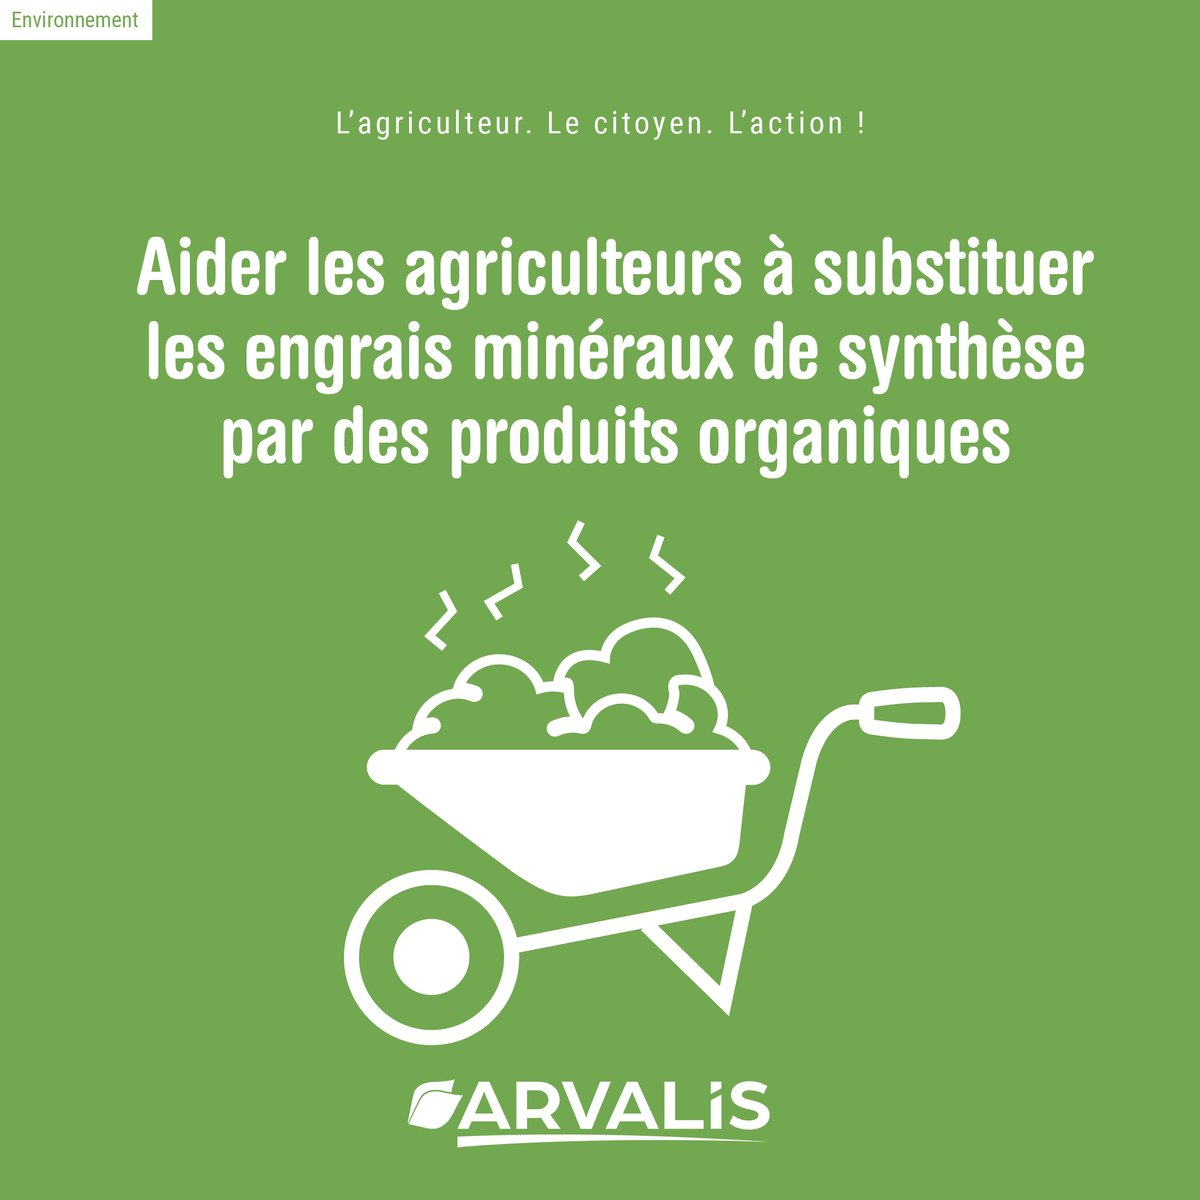 🚜 L'outil « fertiliser avec des produits organiques et biosourcés » créé par @Arvalisofficiel permet d’estimer la composition en azote, potassium, phosphore et magnésium des matières fertilisantes 🌱

📌 ow.ly/3Y4e50Nzwwt
👀 ow.ly/C0AB50Nzwws

#ARVALIS #agroécologie